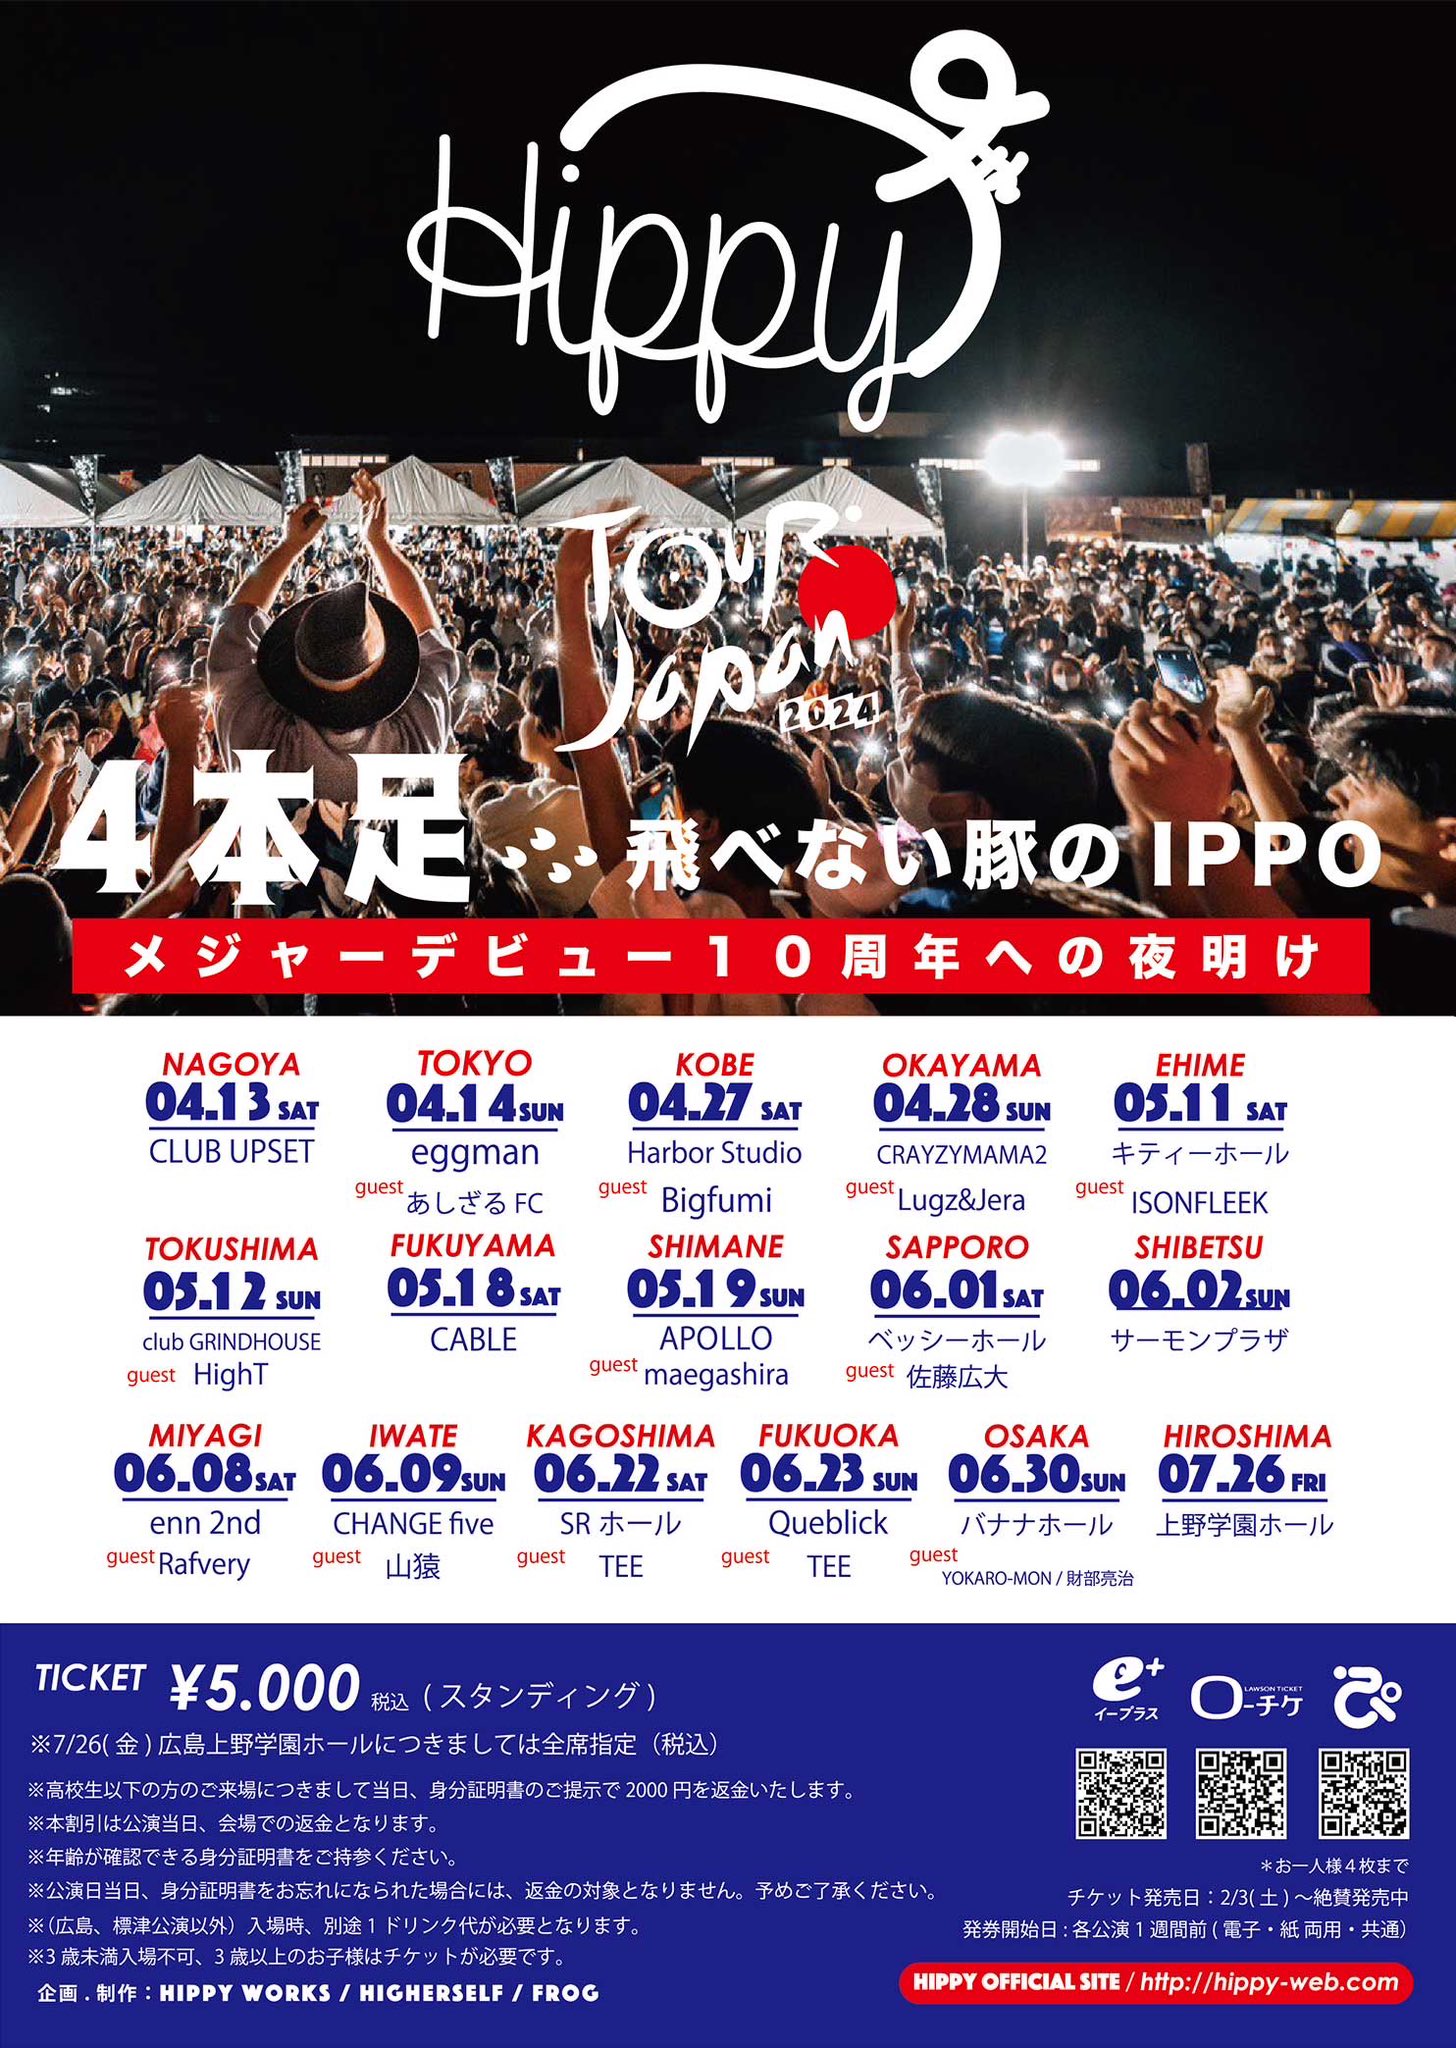 HIPPY JAPAN TOUR -------4本足-------- 翔べない豚のIPPO メジャーデビュー10周年への夜明け